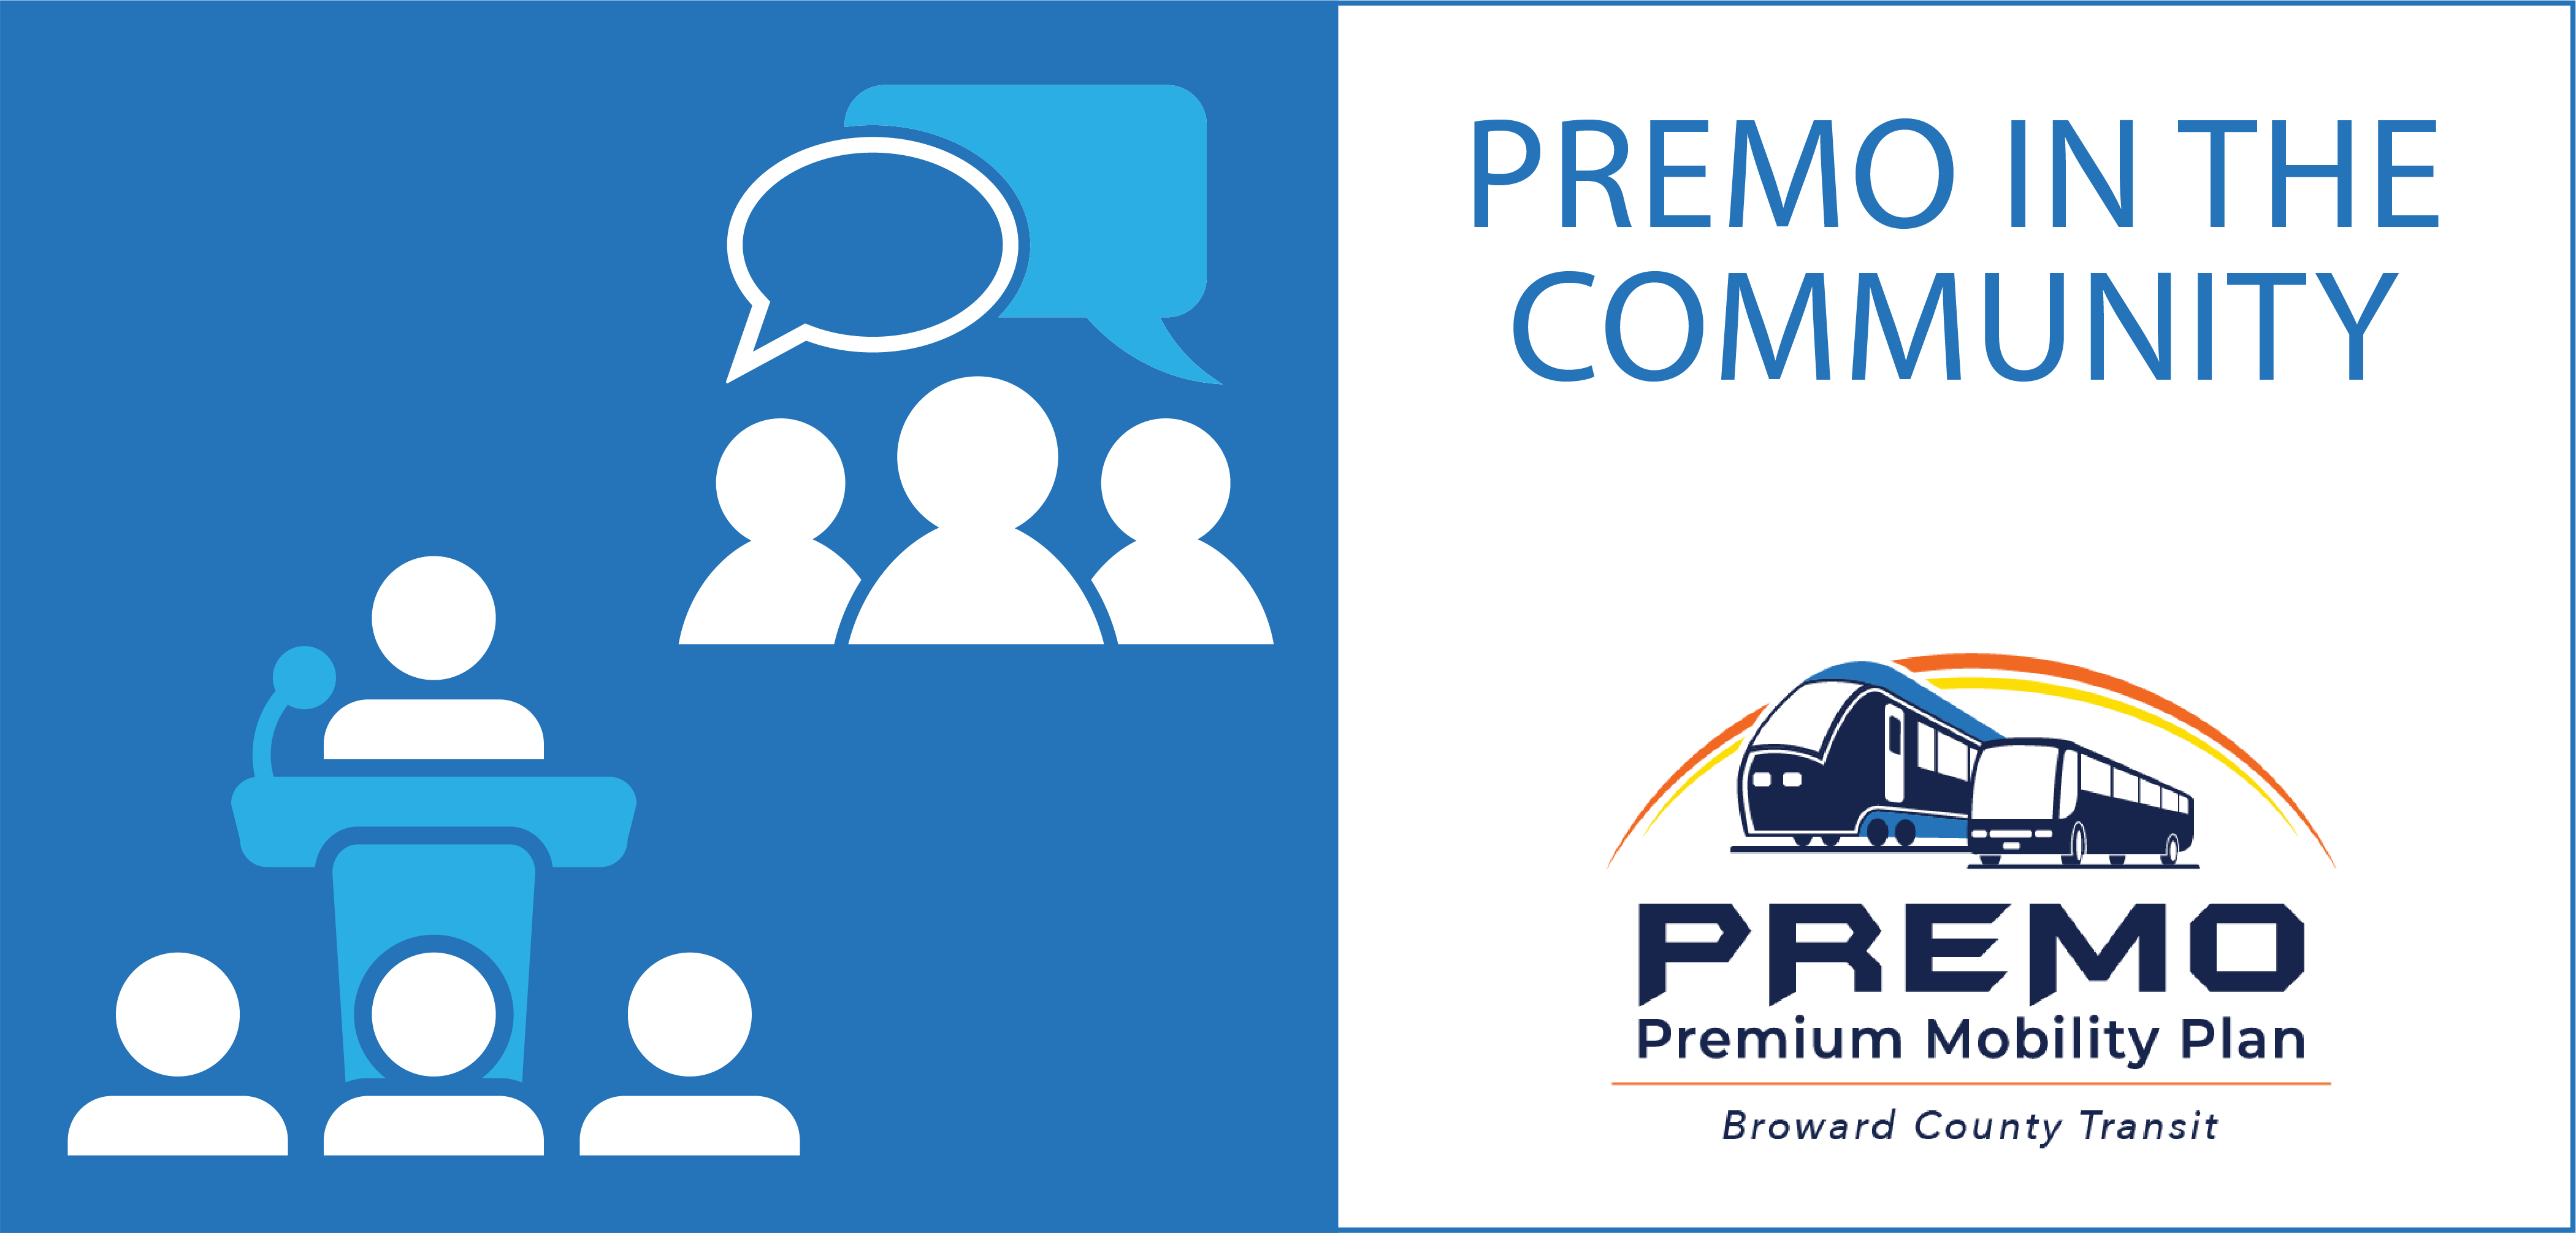 PREMO in the Community